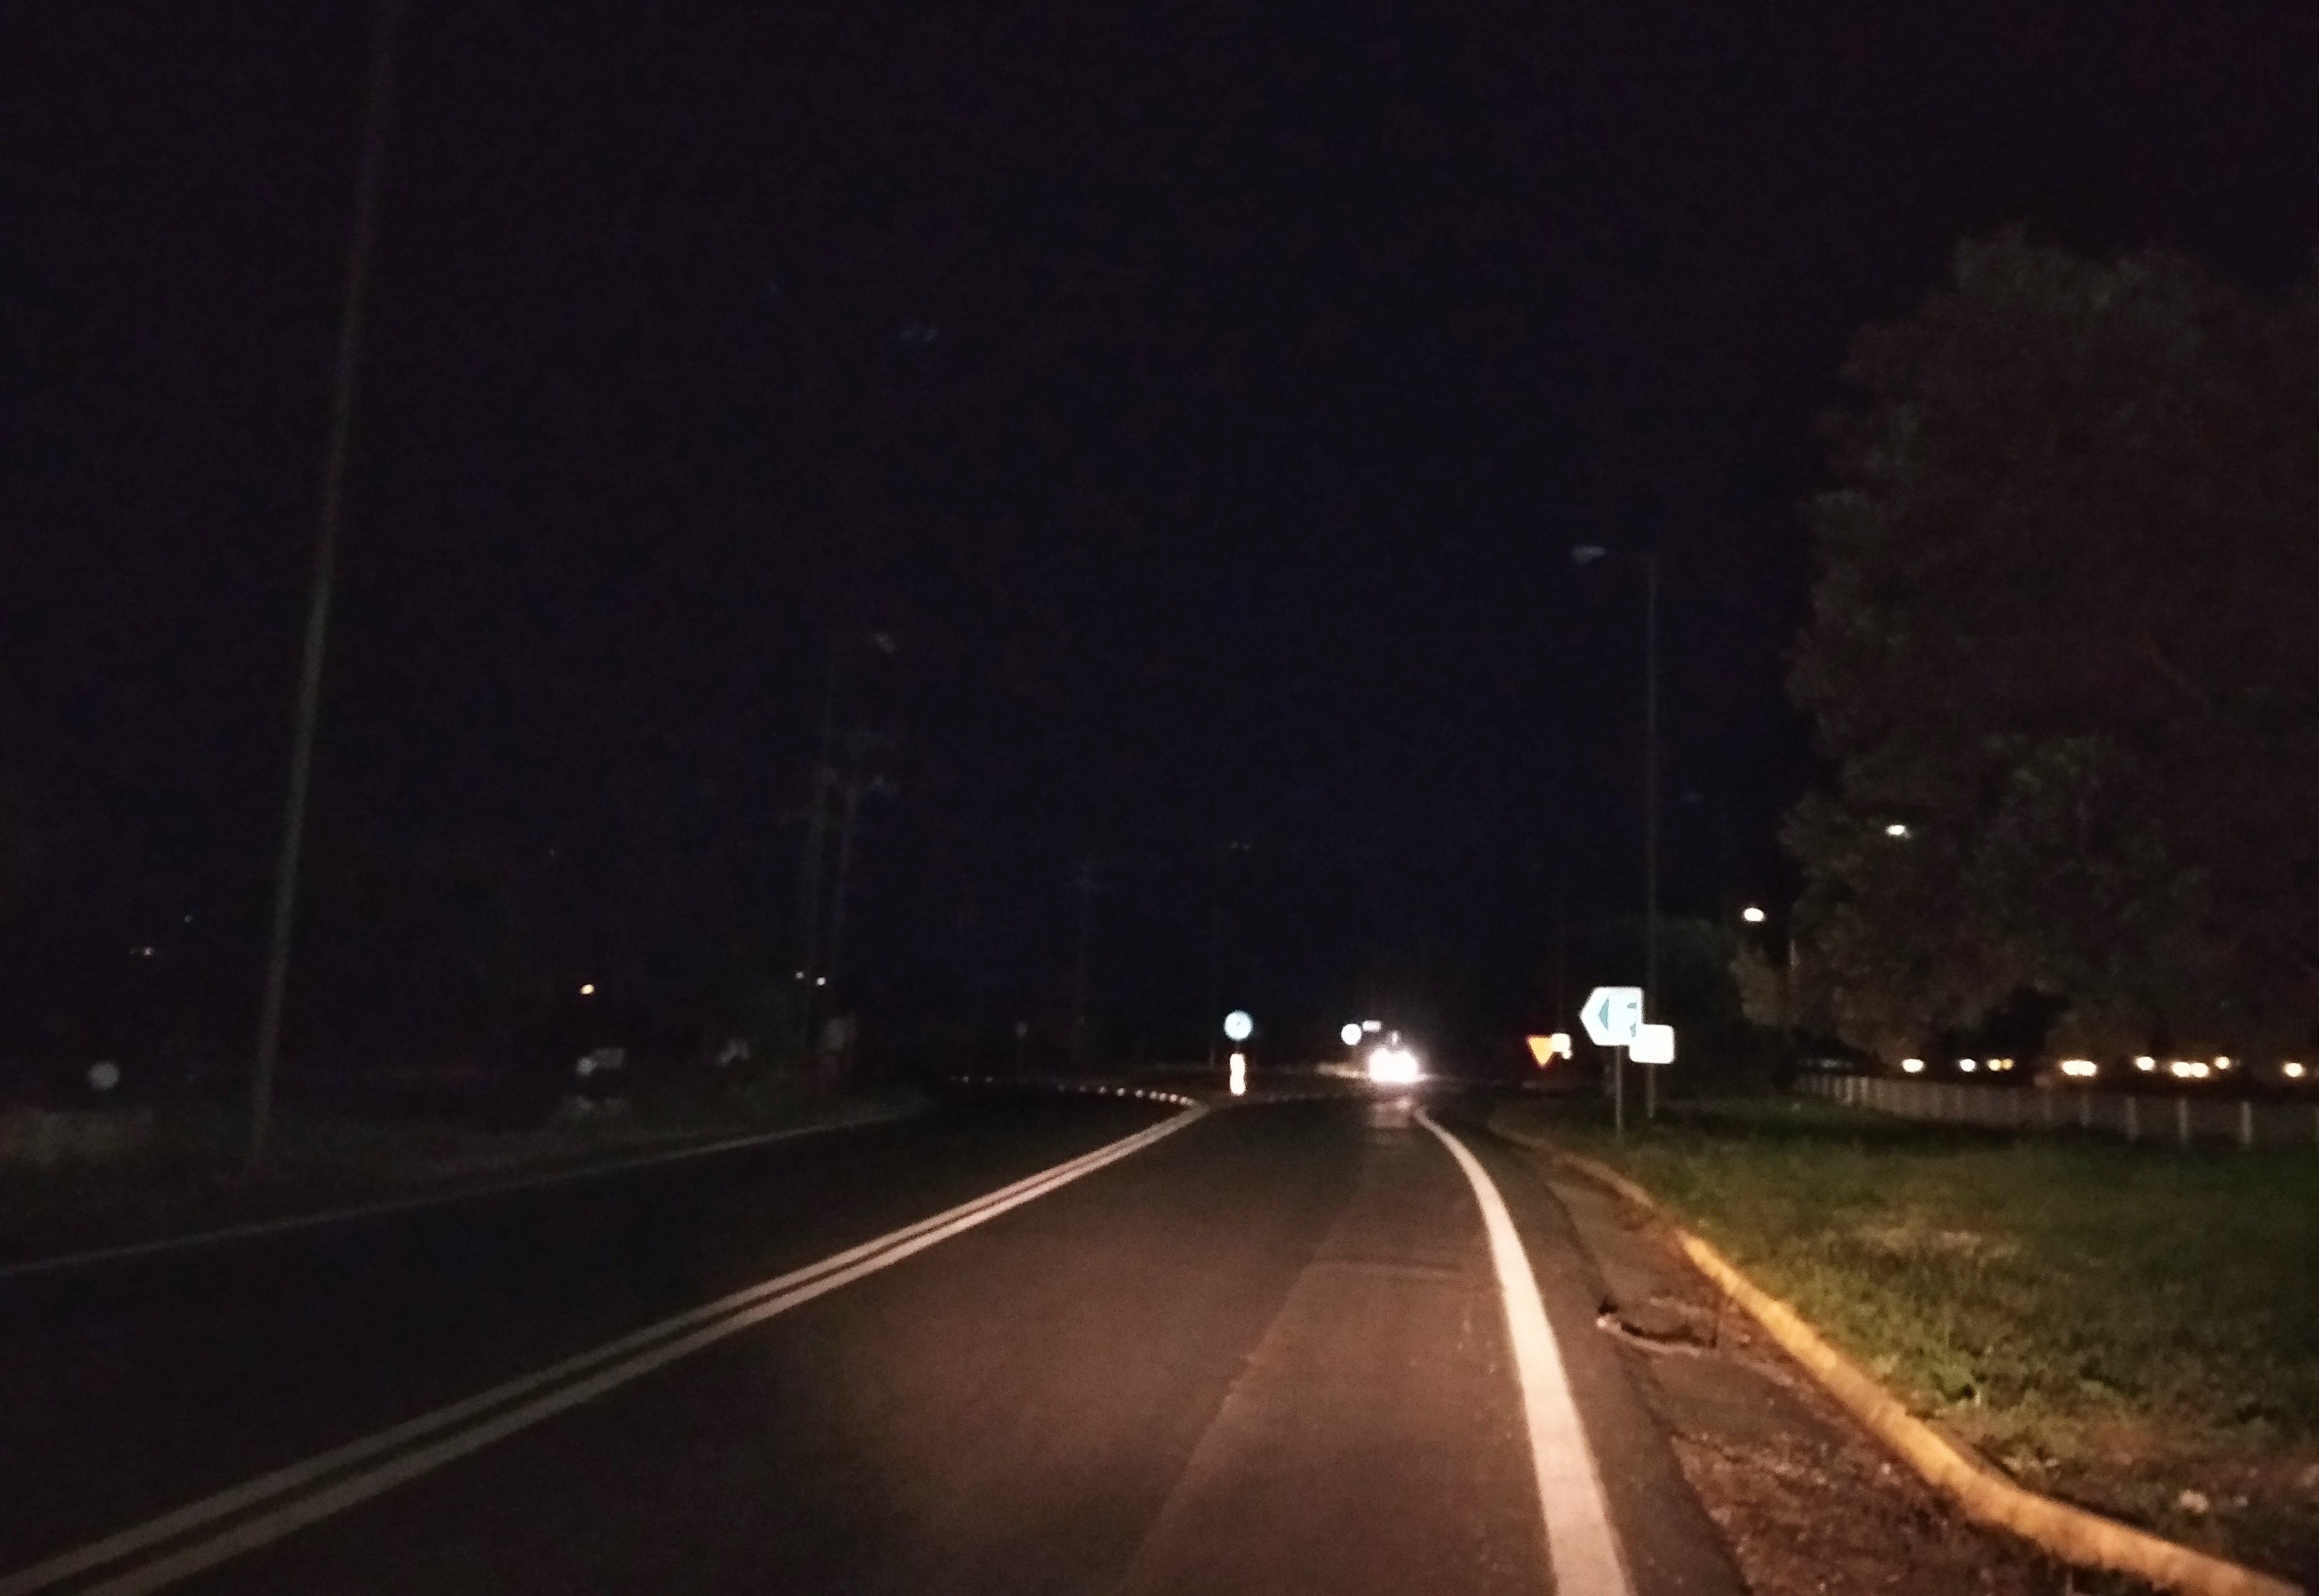 Στο σκοτάδι ο κόμβος του δρόμου προς το αεροδρόμιο Χανίων (φωτο)